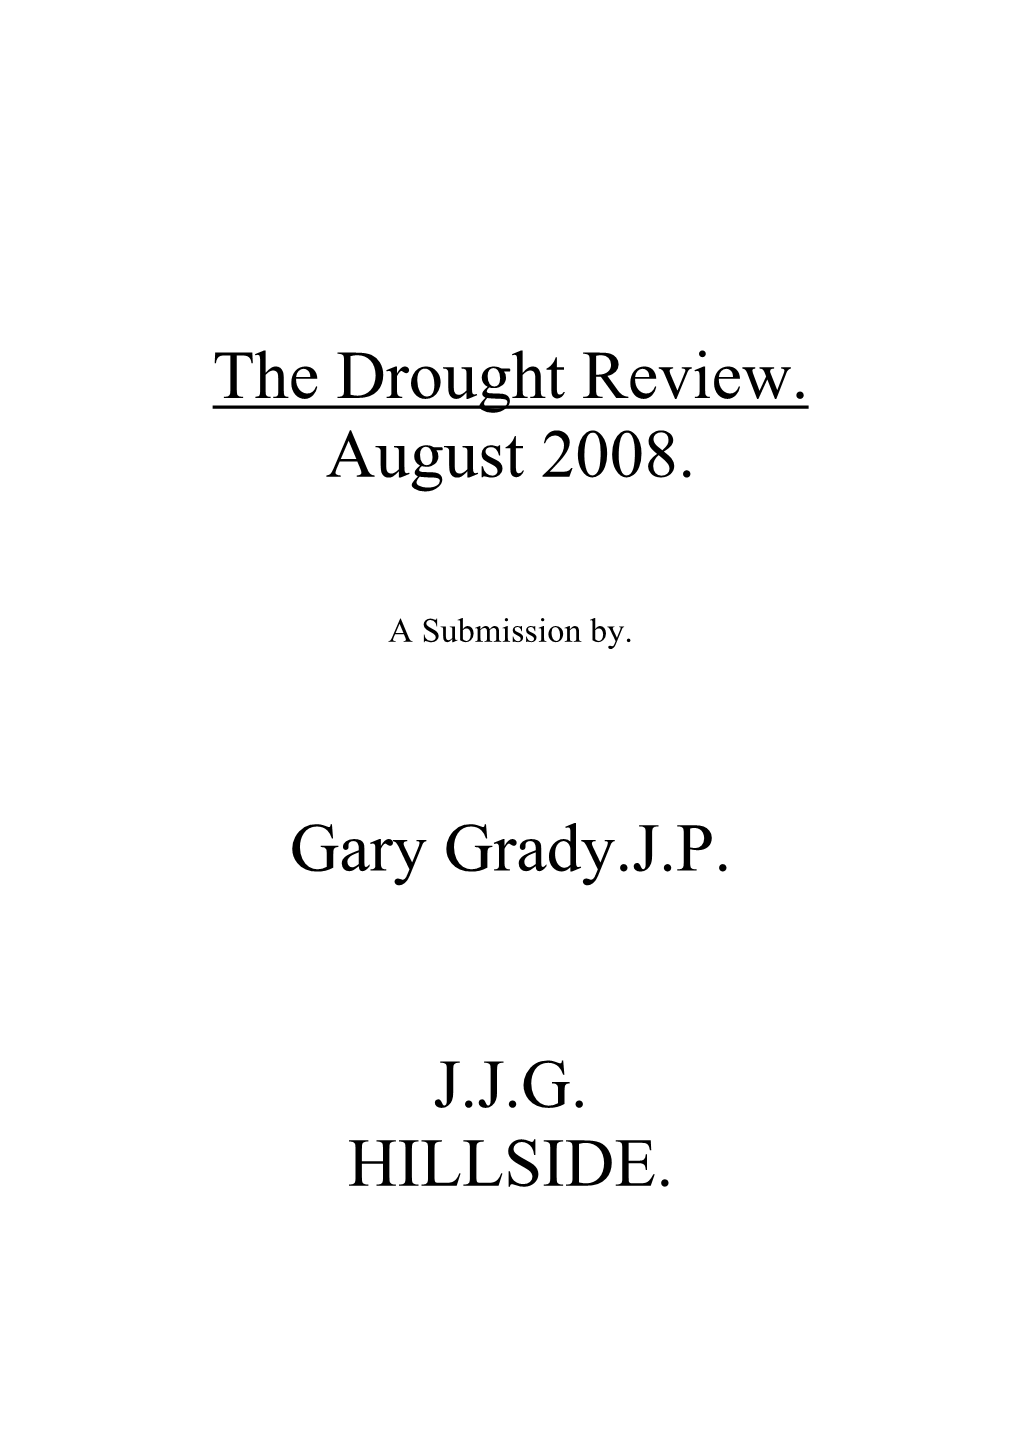 The Drought Review. August 2008. Gary Grady.J.P. J.J.G. HILLSIDE